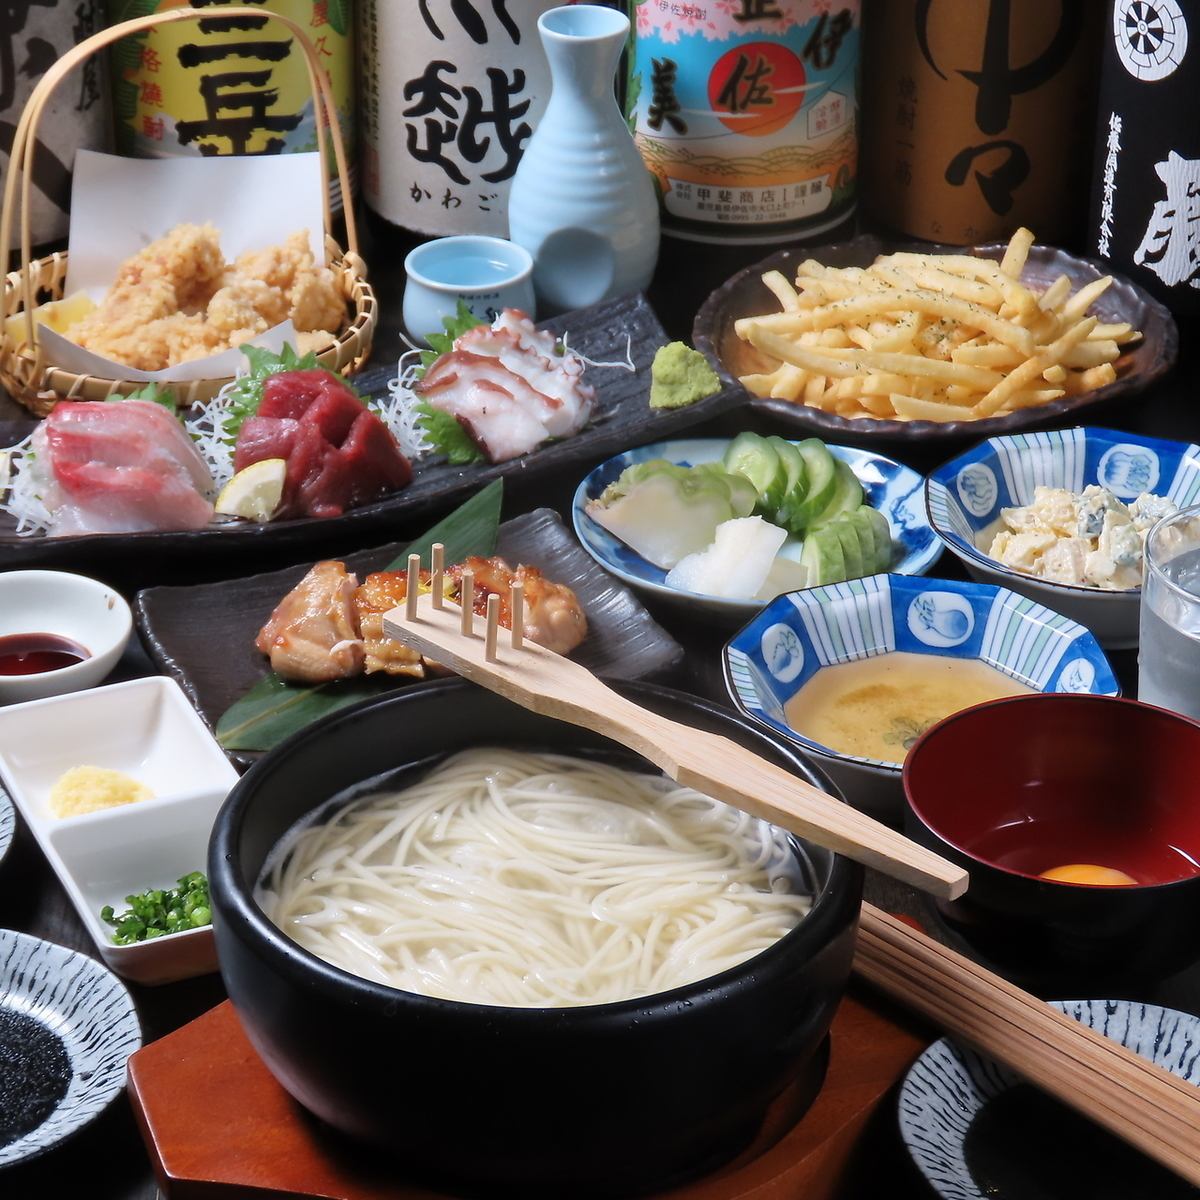 澀谷隱藏的日式居酒屋◆在舒適的氛圍中享受日本各地的精緻美食